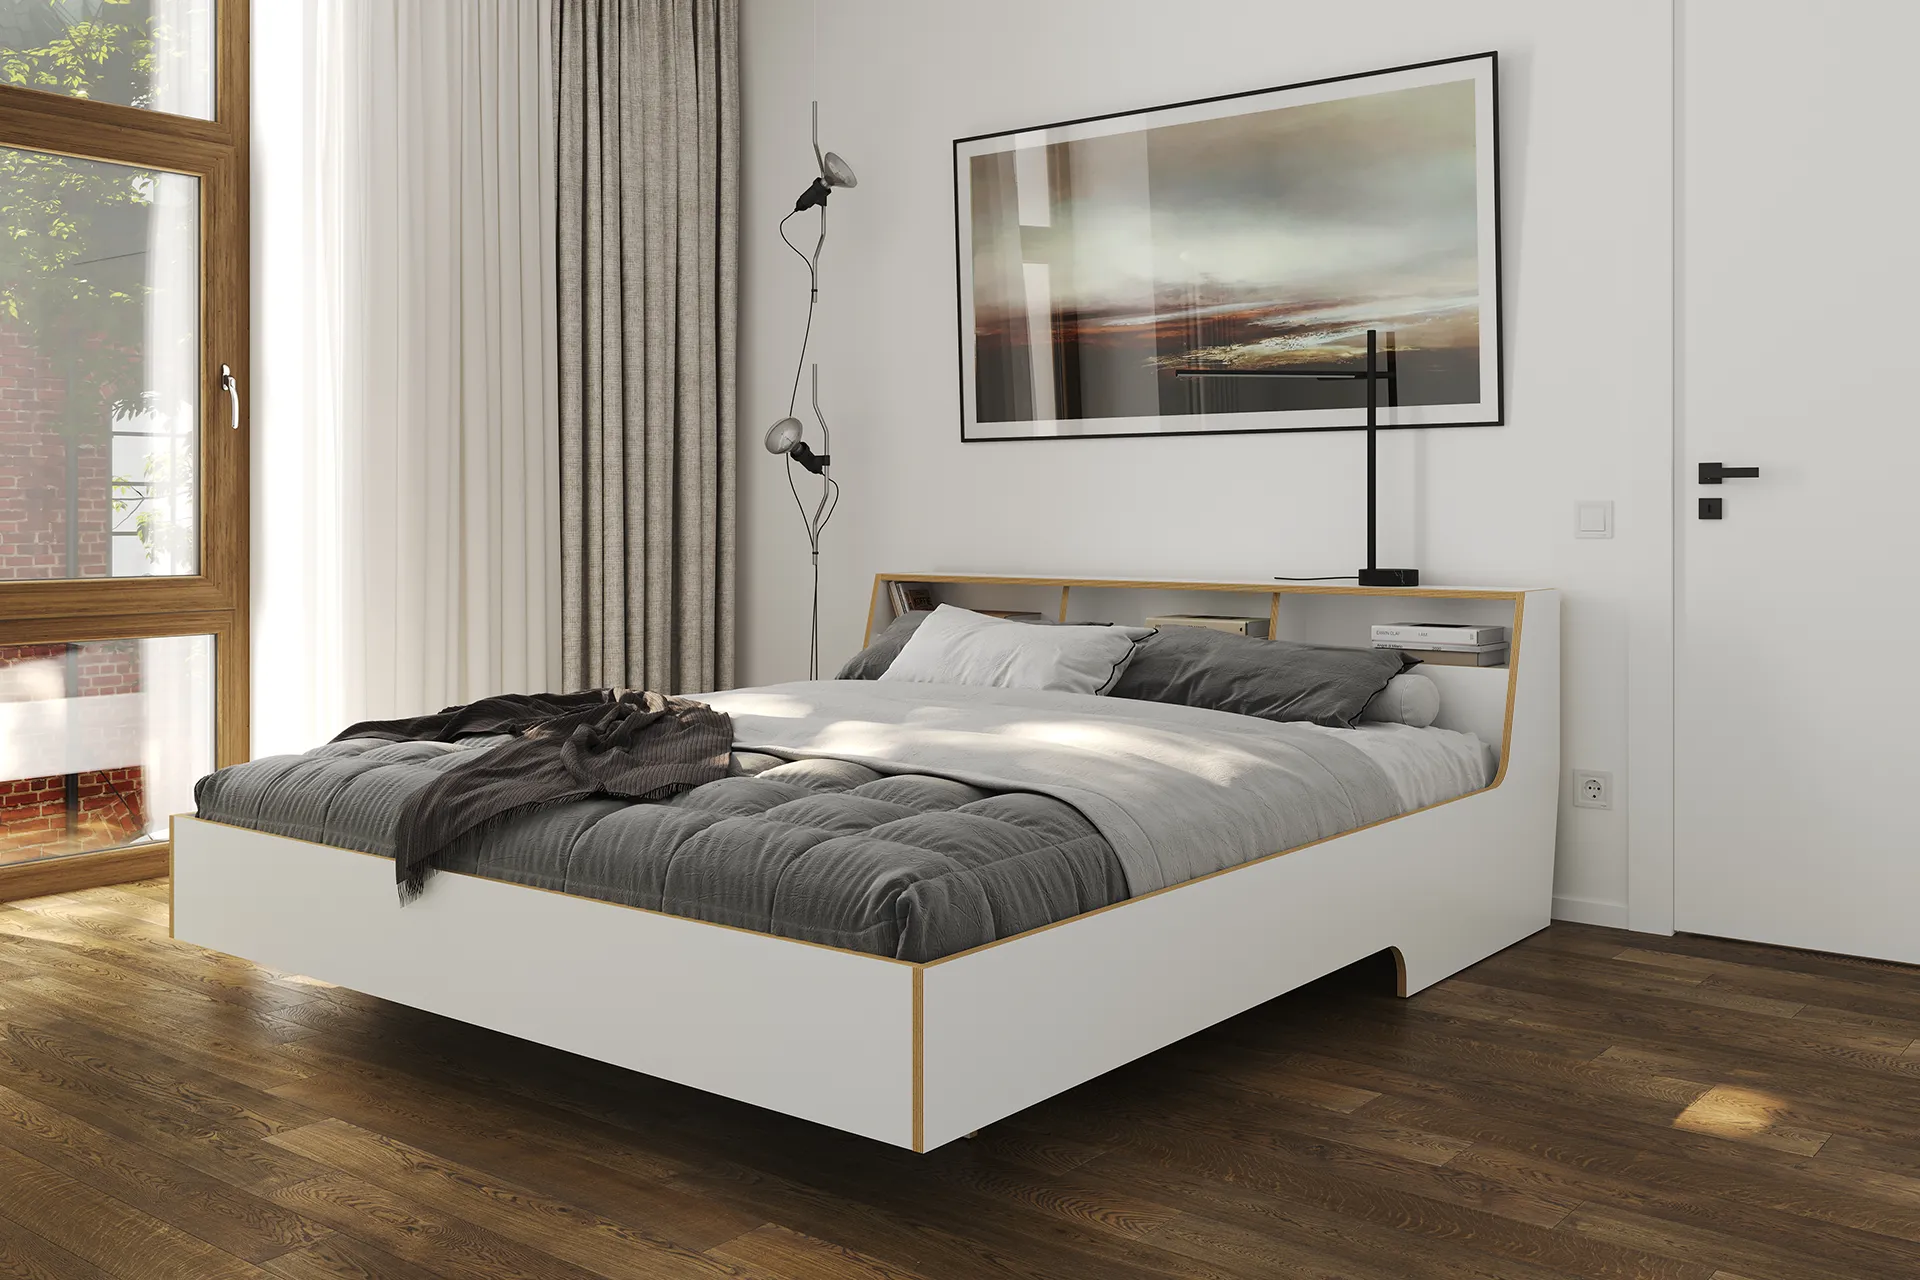 Slope Doppelbett 180x220 in weiß mit Kopfteil und Ablagefächern